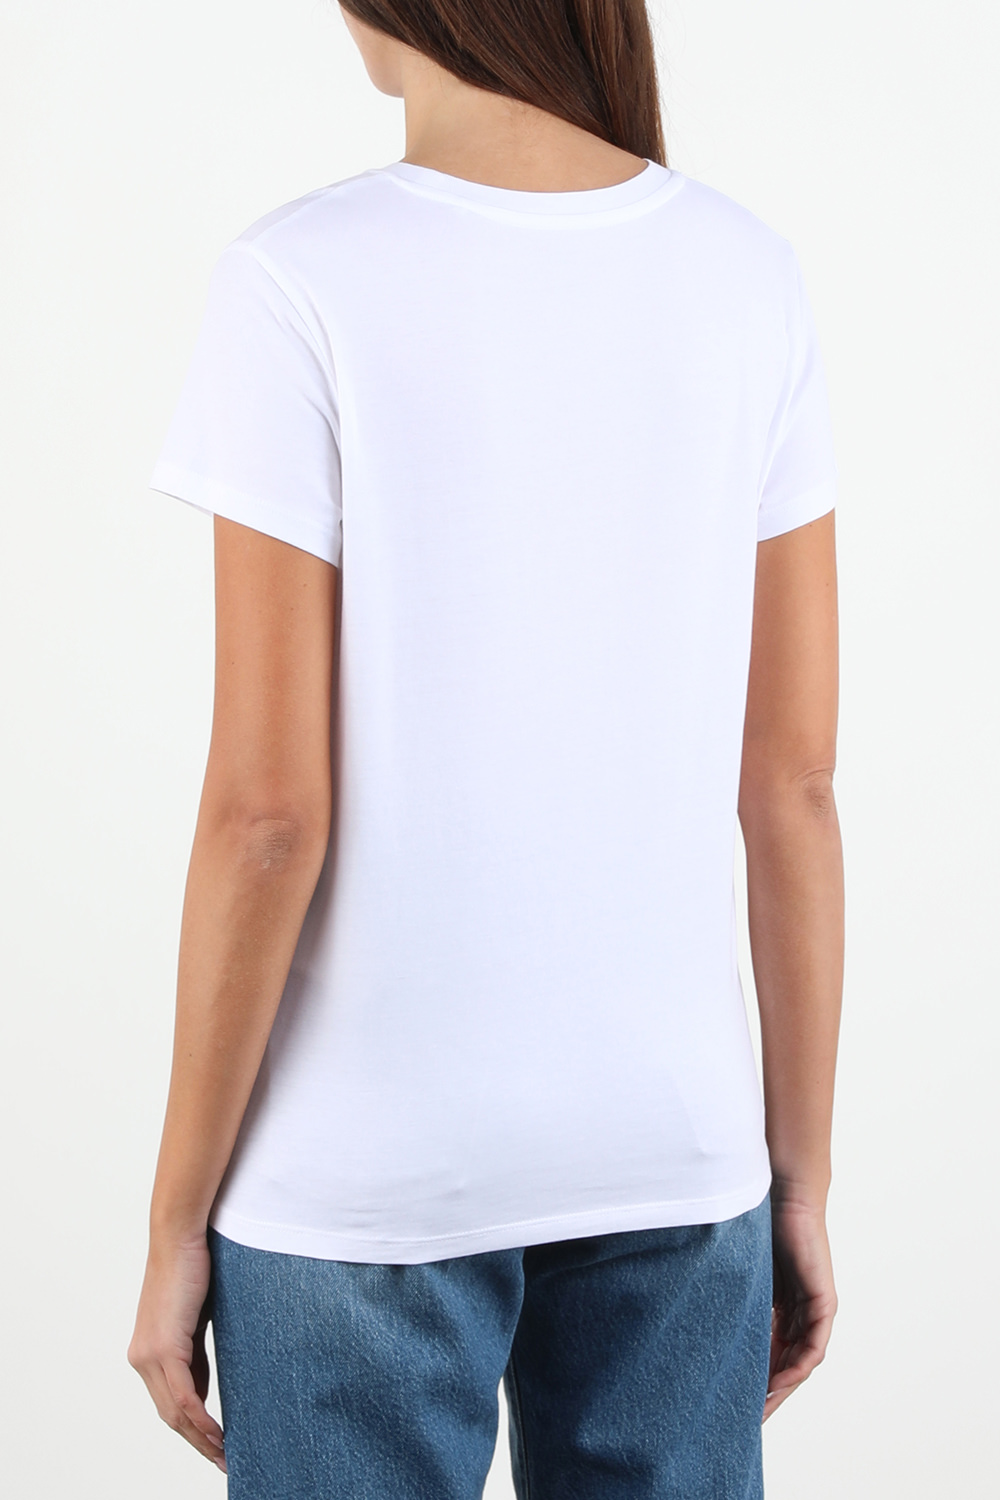 חולצת טי וינטג' לבנה עם לוגו LEVI`S